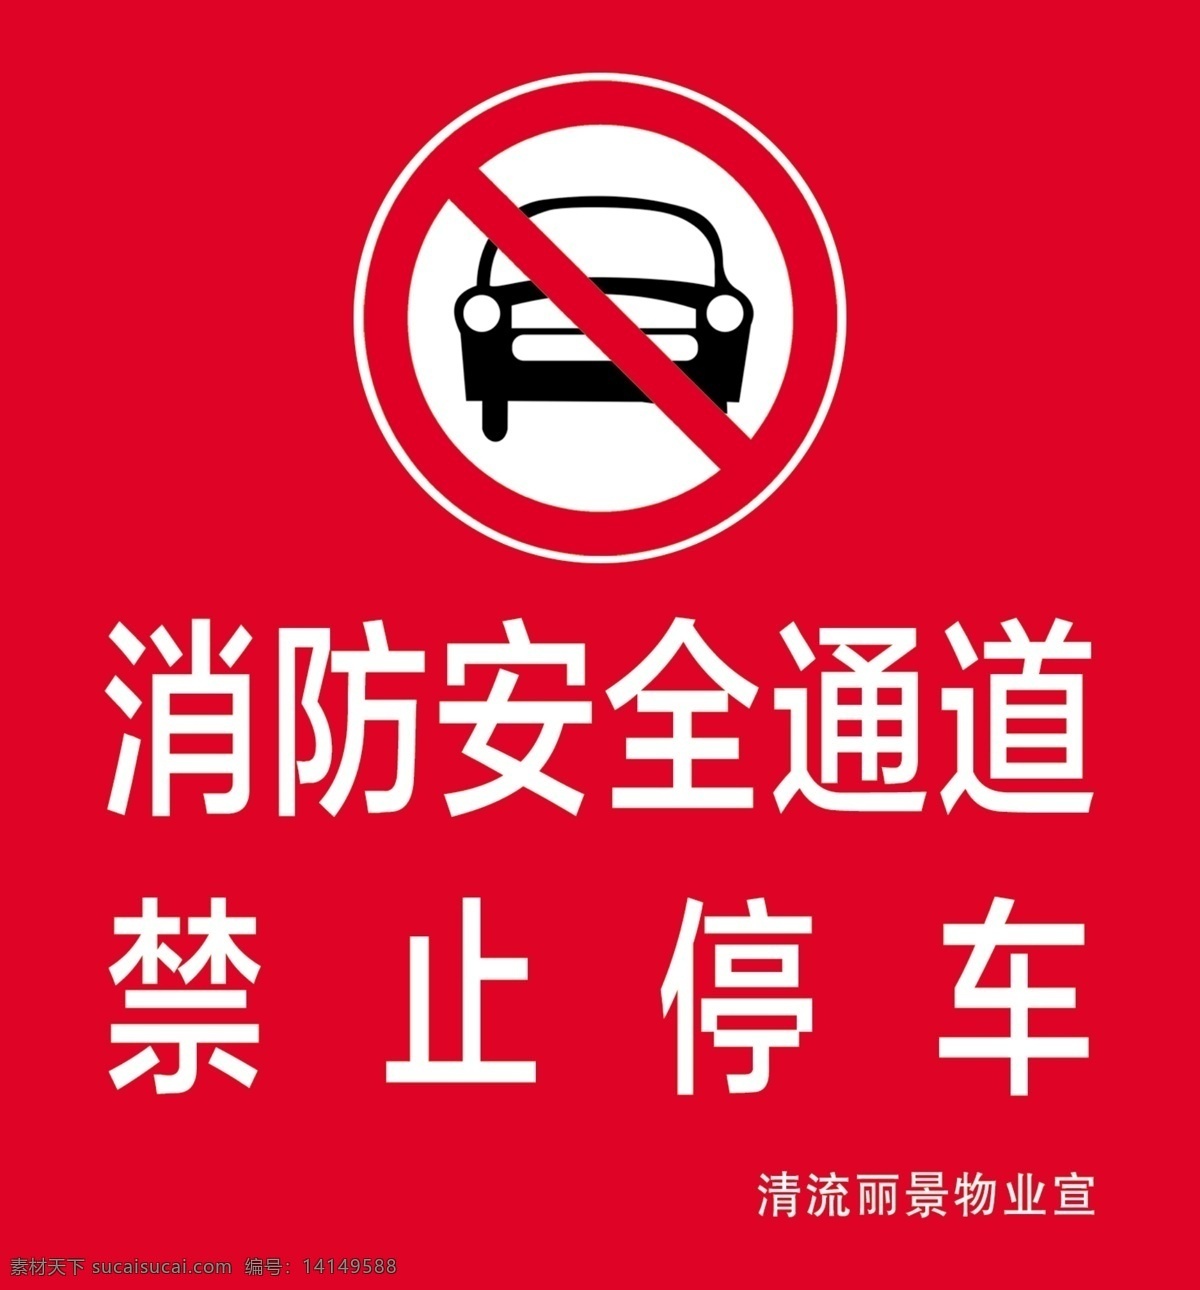 消防安全通道 禁止停车 清流丽景 消防通道 主题墙 展板 海报 招贴